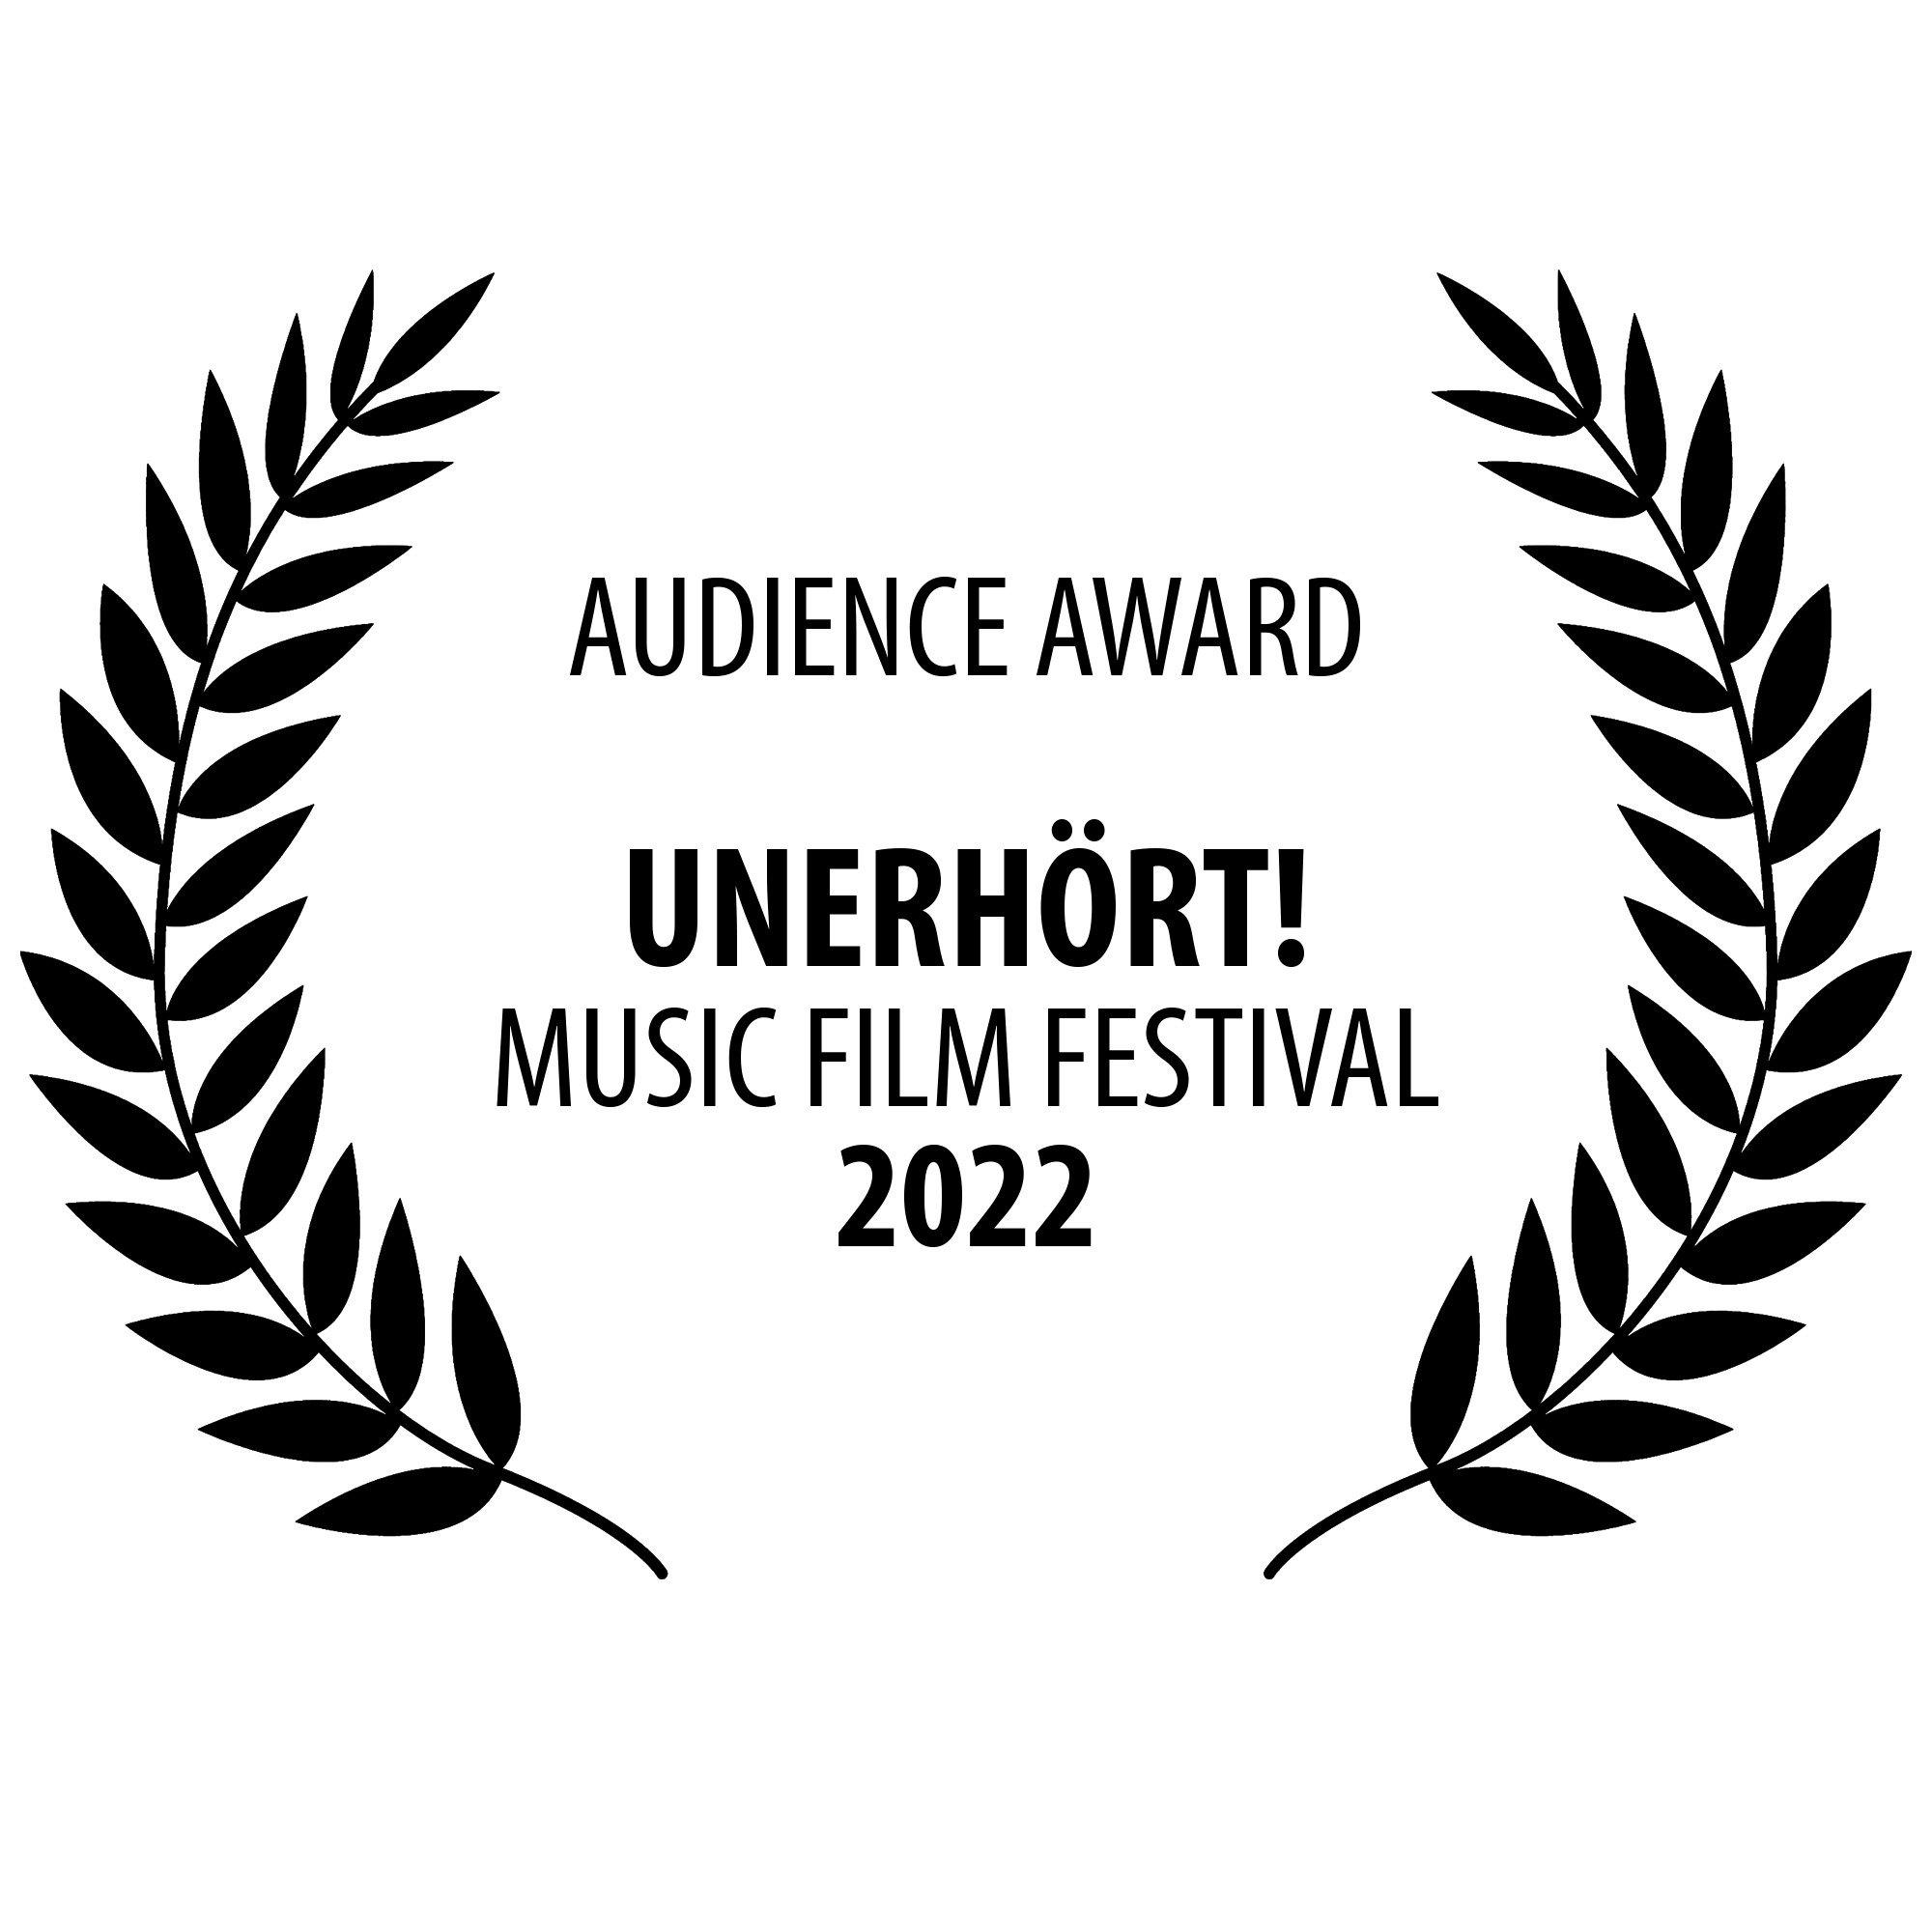 UNERHÖRT! Audience Award 2022